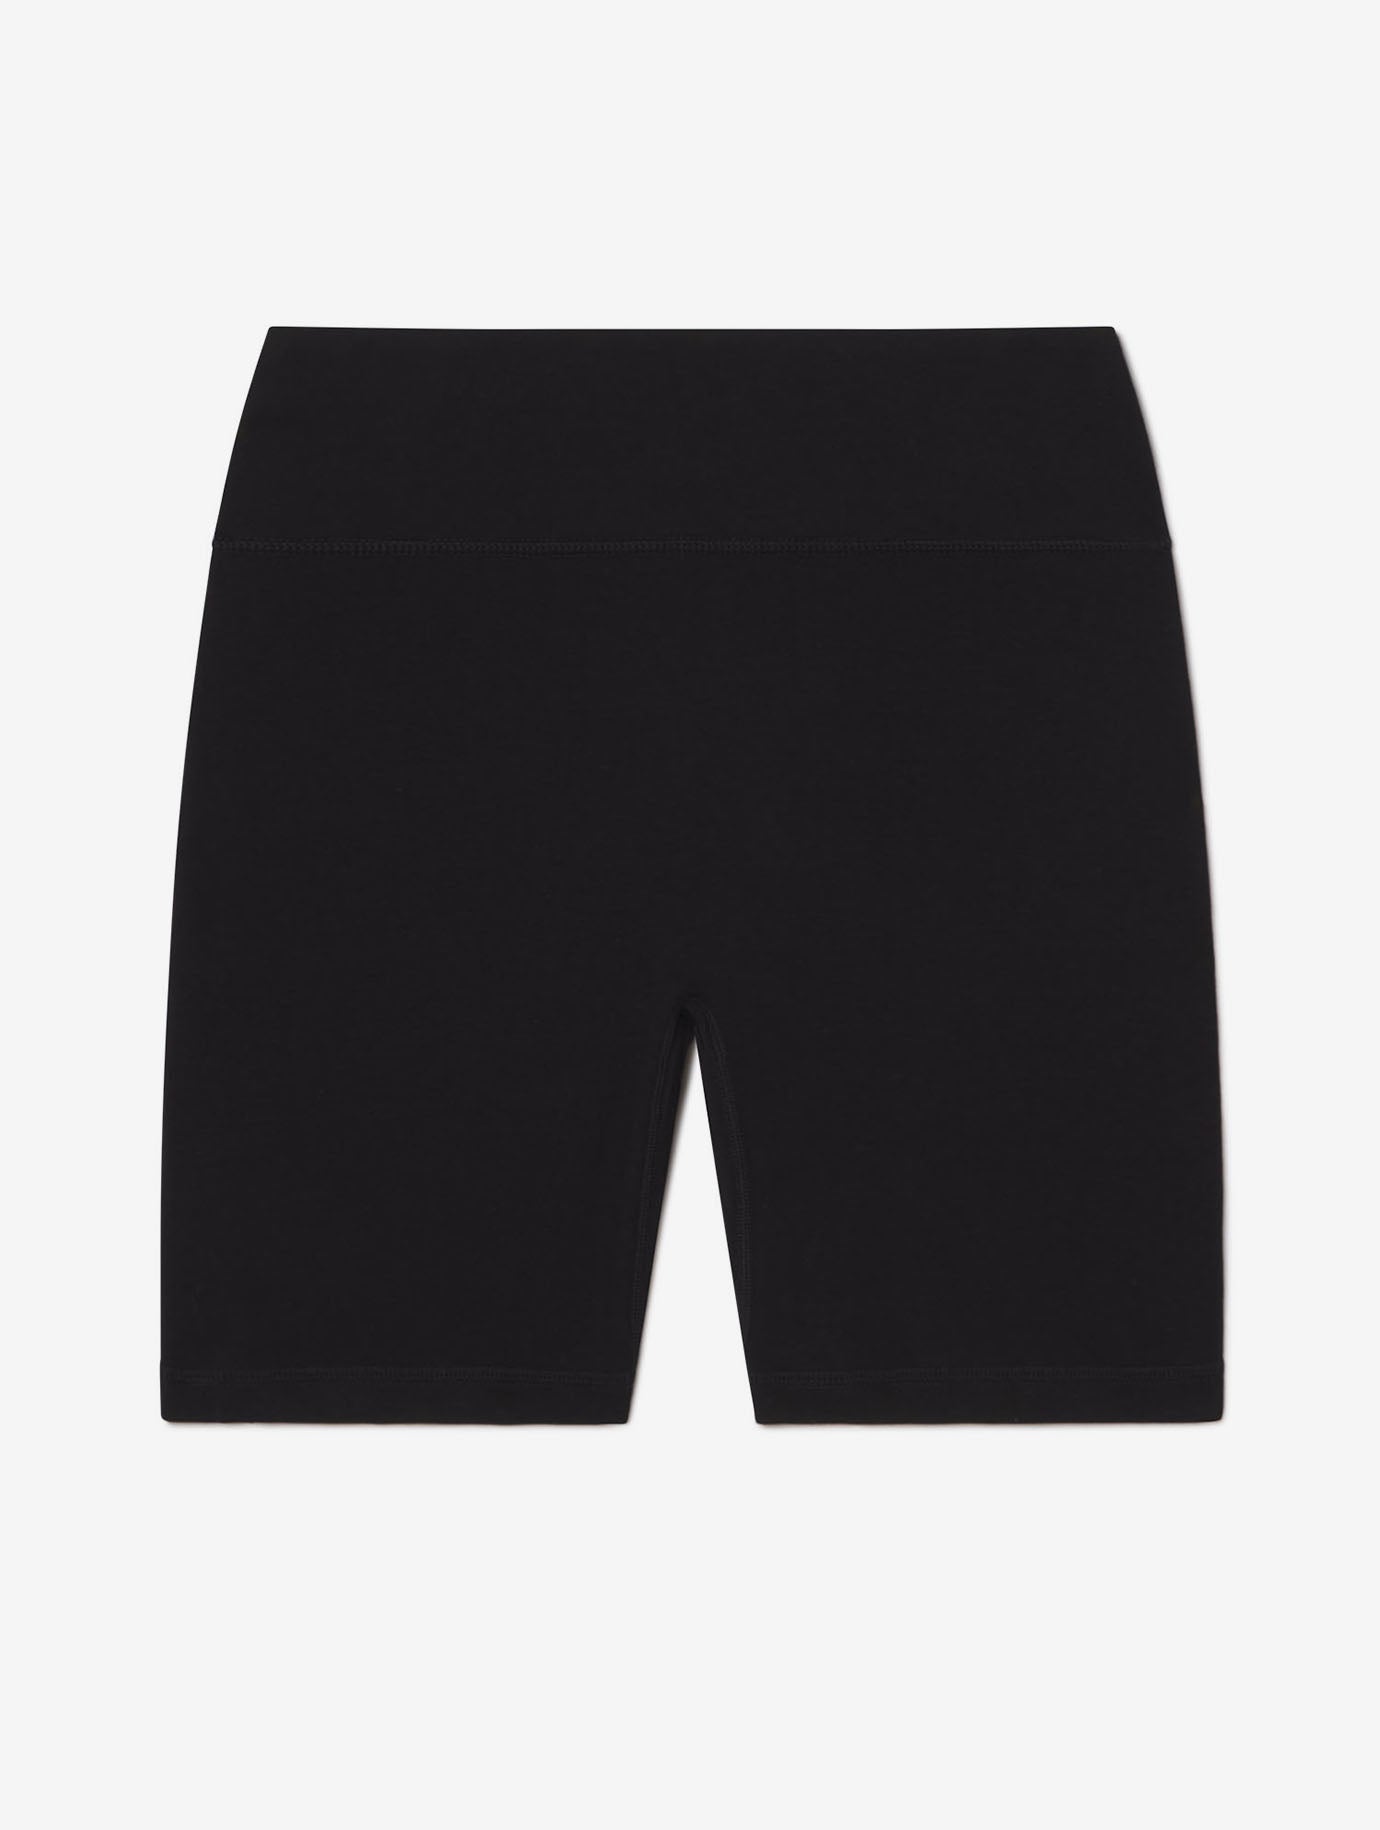 Allwear Bamboo 6’’ Compression Shorts - Allwear